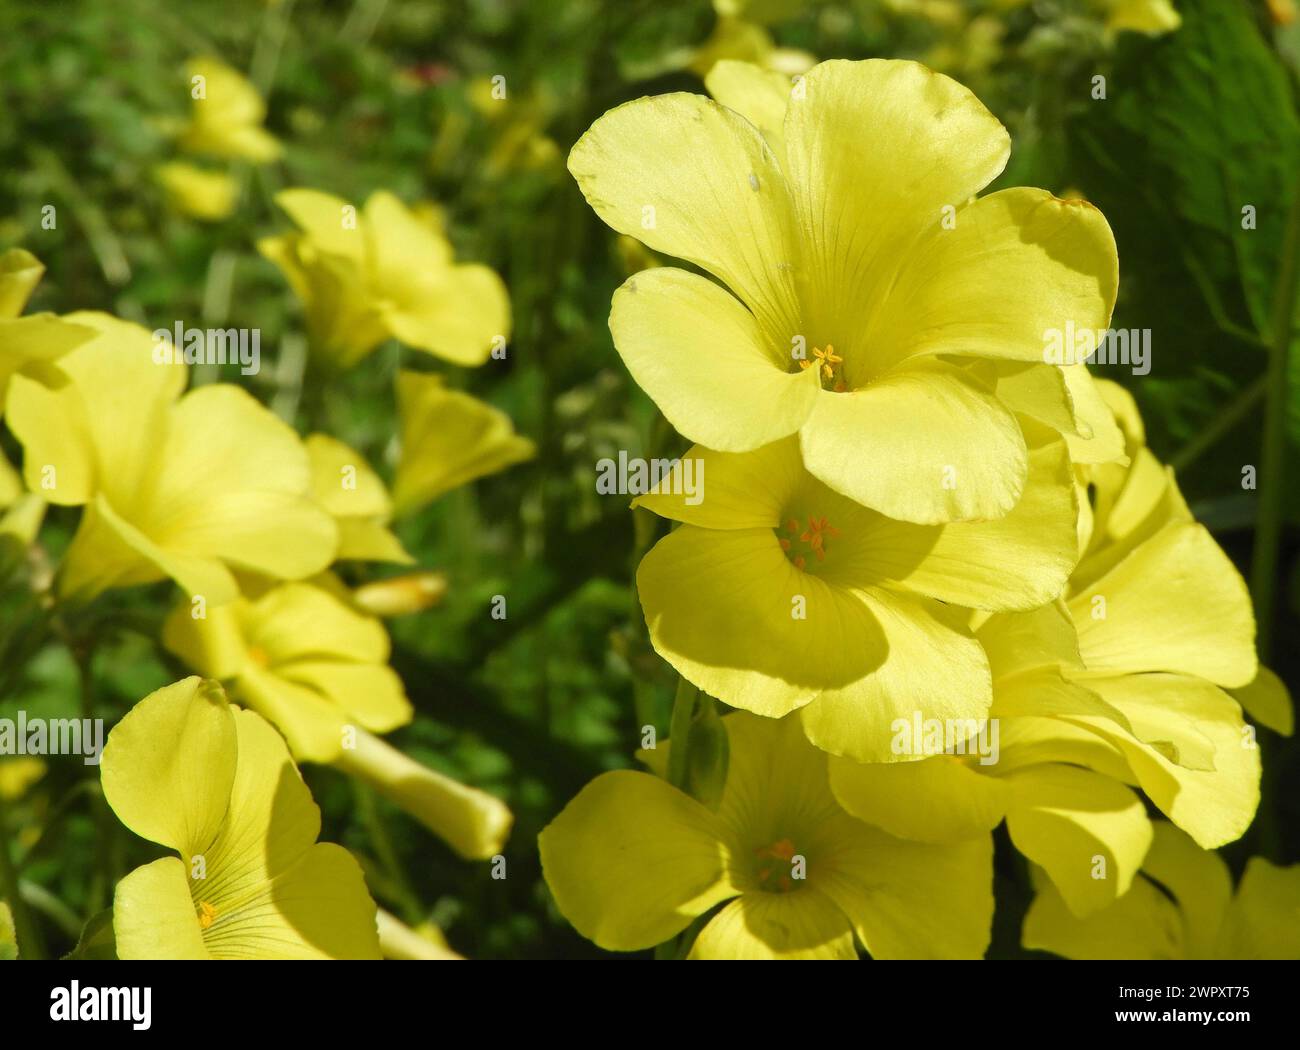 Oxalis pes-caprae oder afrikanische Sauerampfer blühende Pflanze. Kap Sauerampfer hellgelbe Blumen Nahaufnahme. Stockfoto